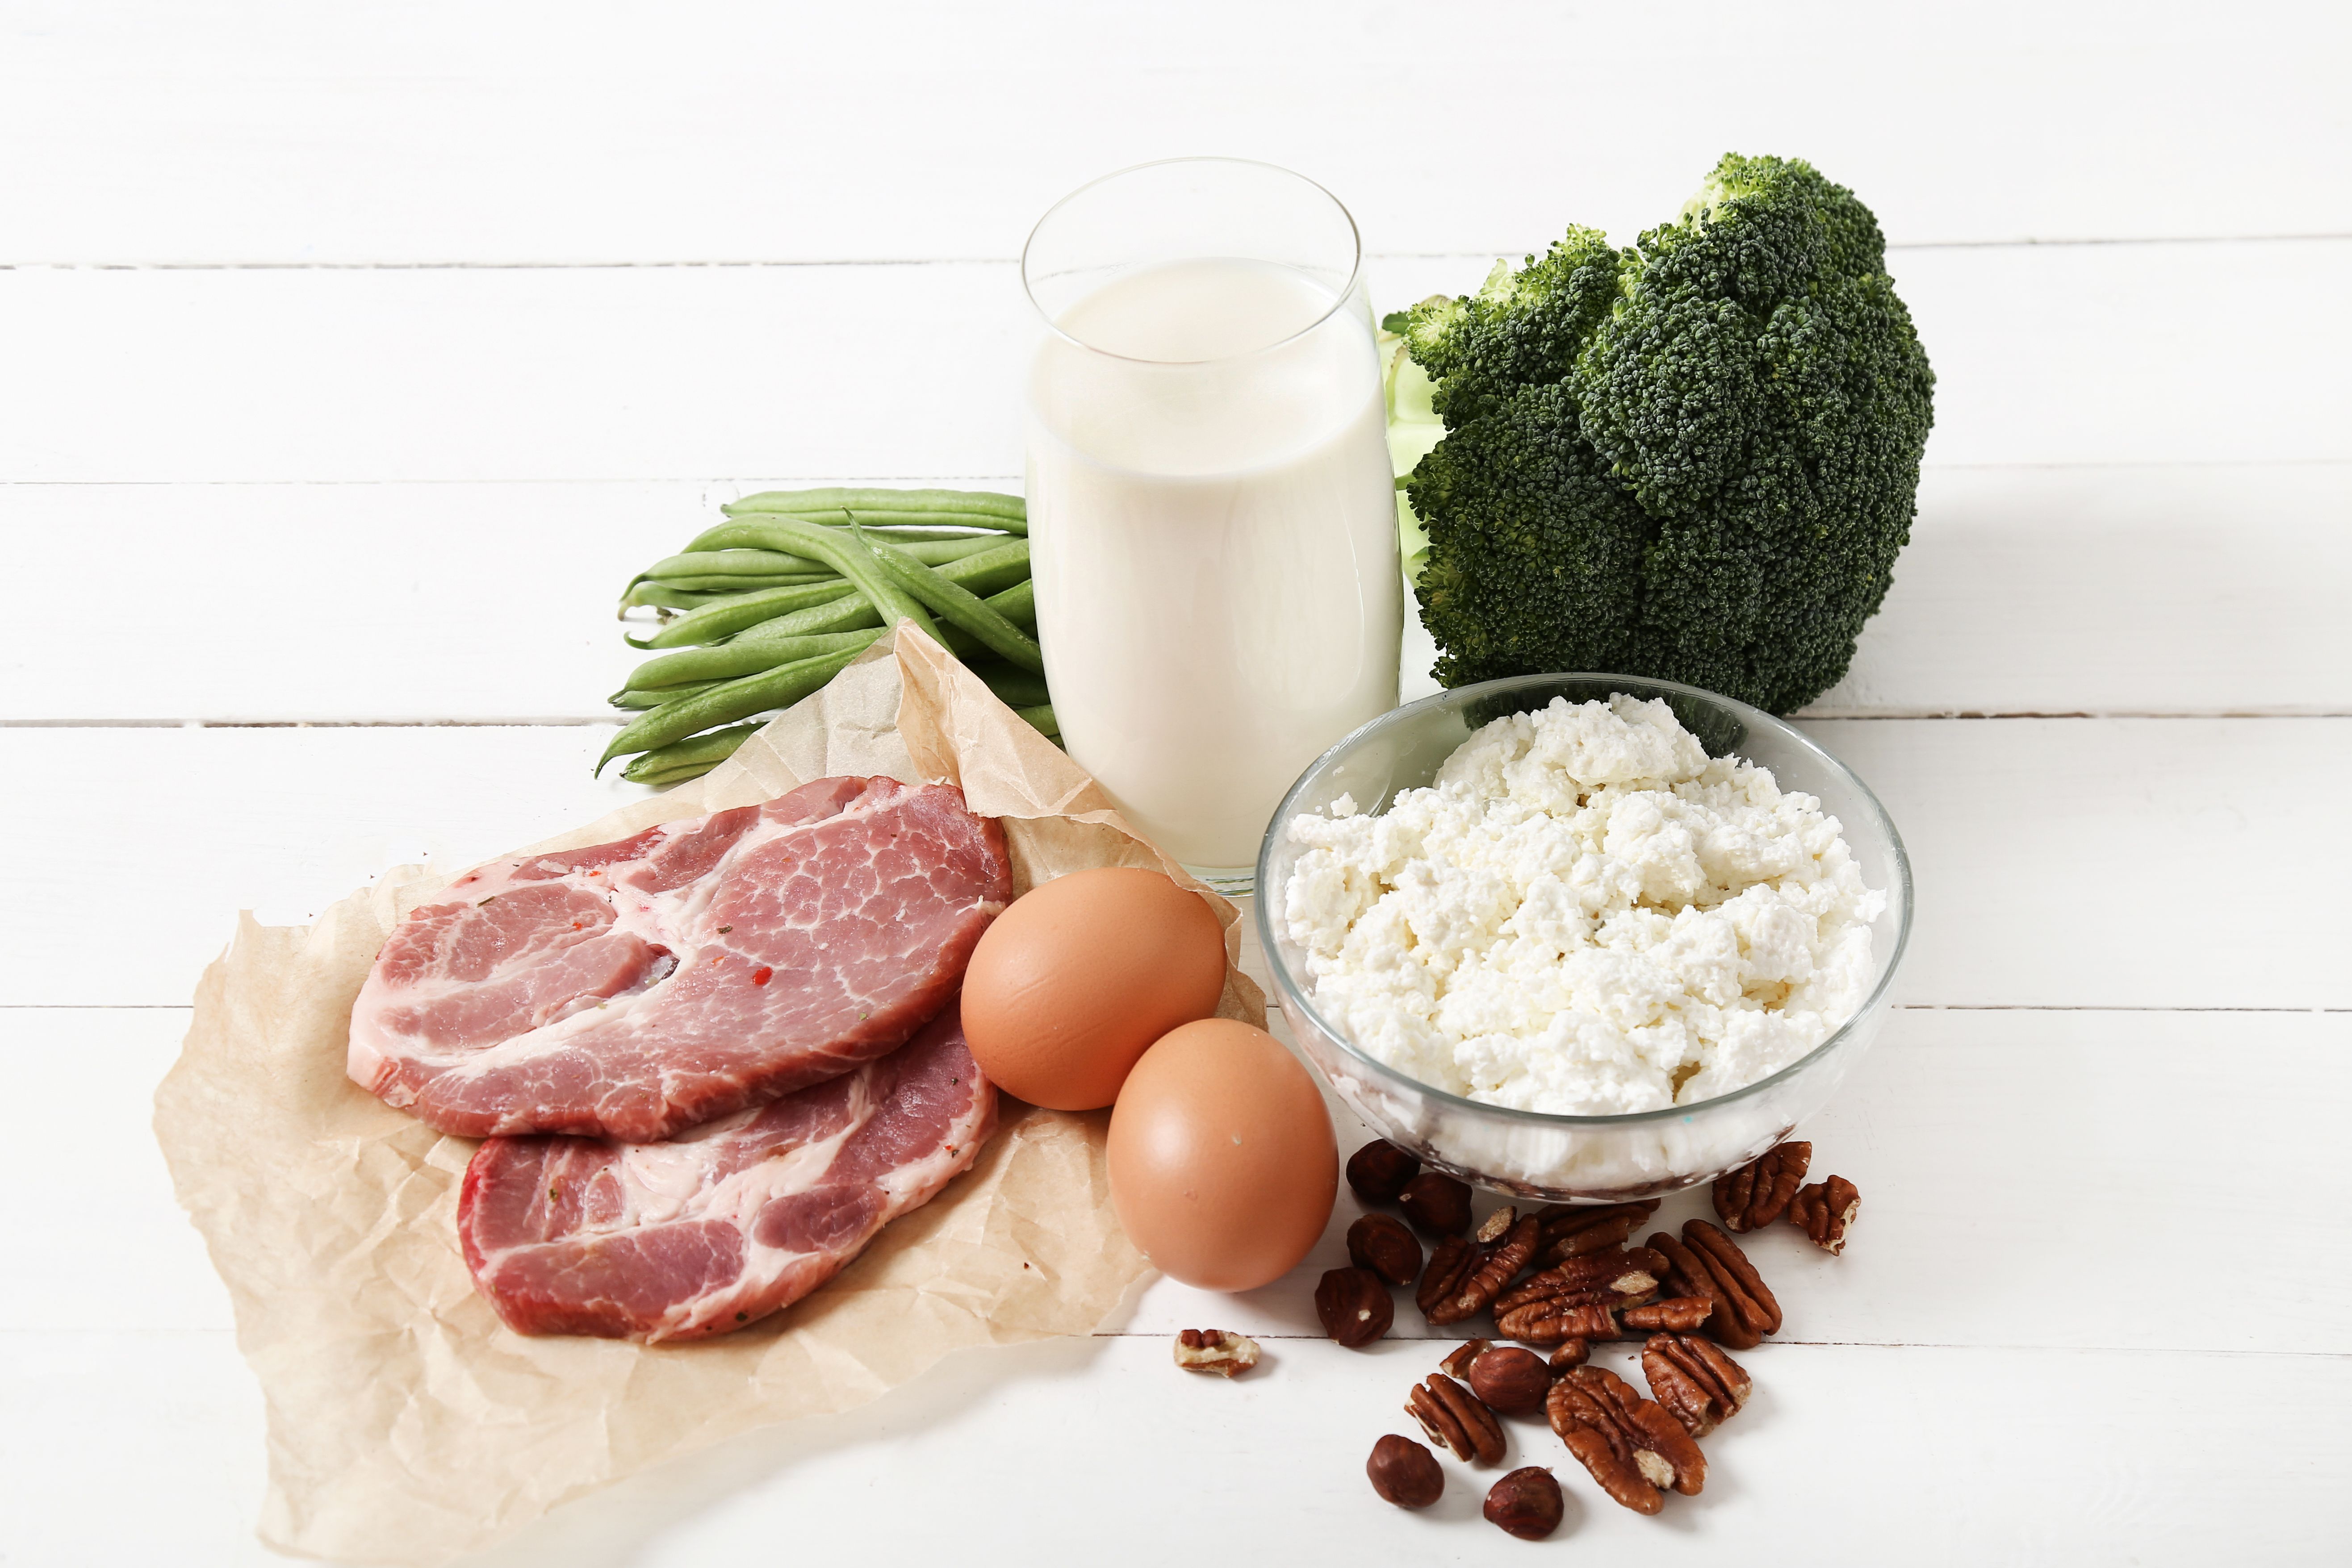 鈣質可從魚肉、牛奶、深綠色蔬菜、芝麻等食物攝取，搭配維生素D3、維生素K2更有助鈣吸收